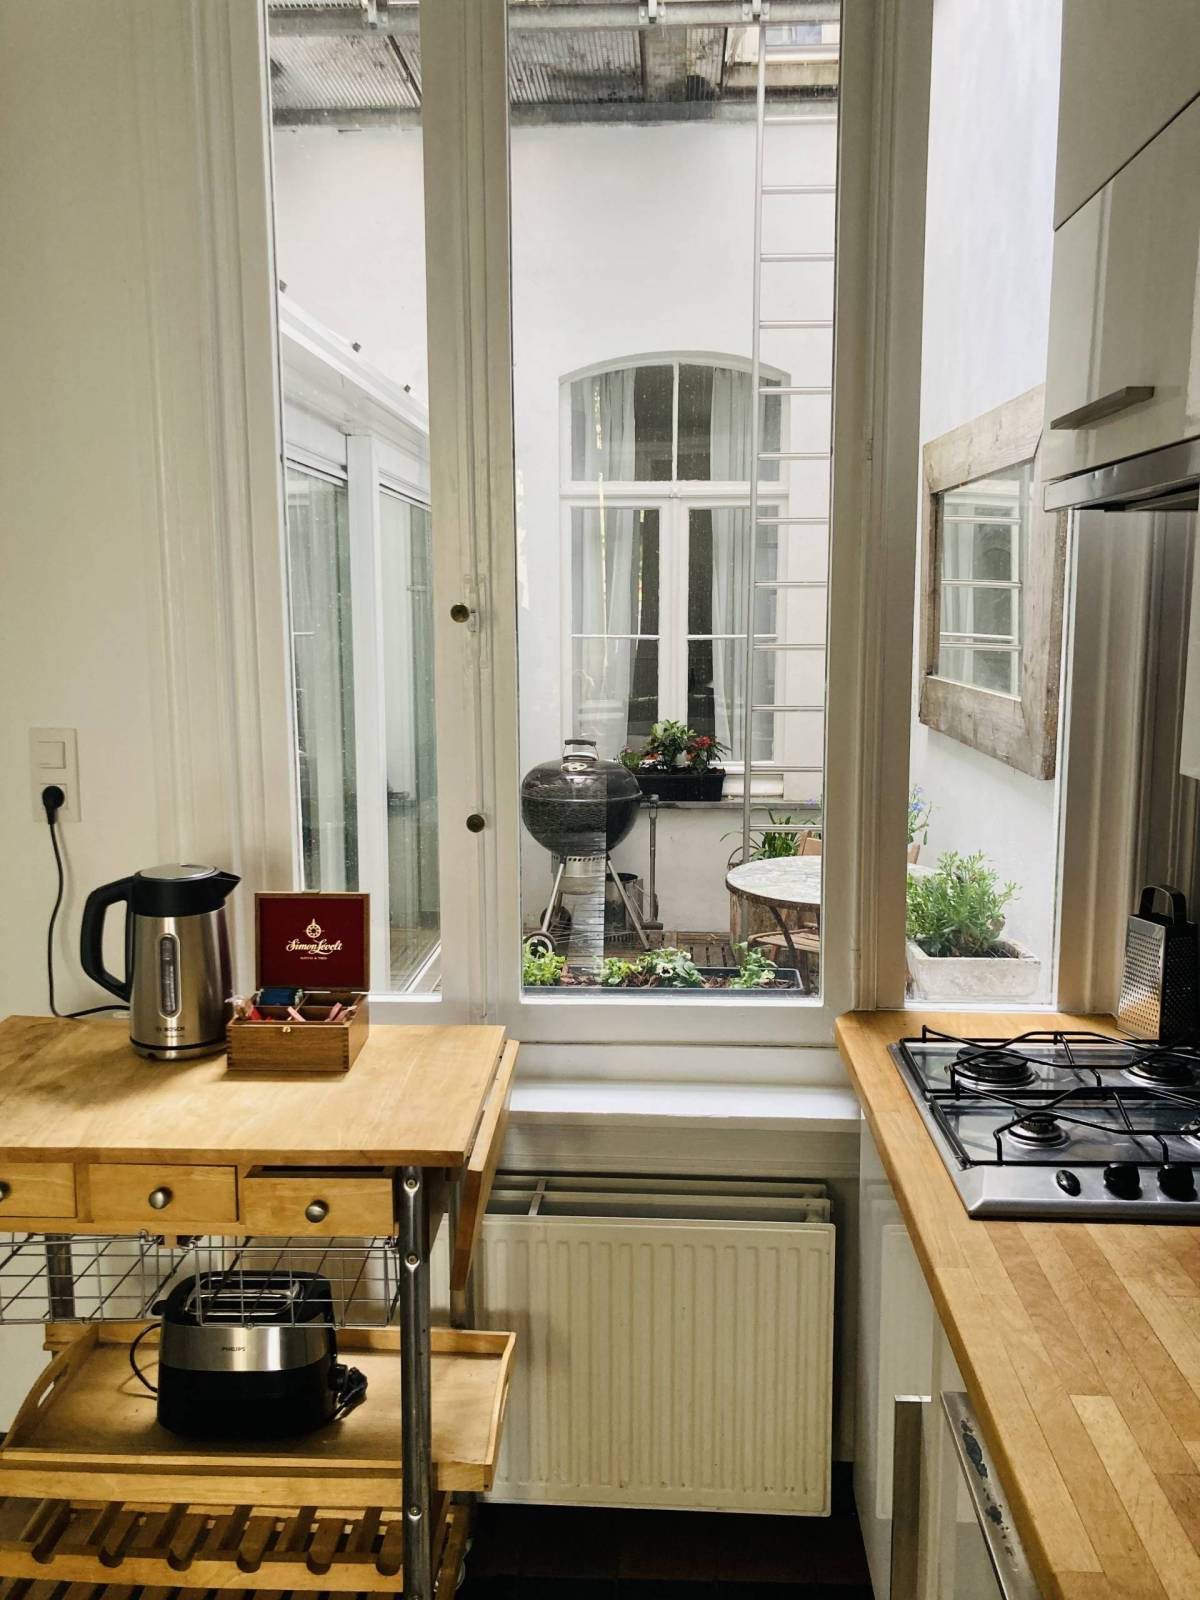 Kromme Elleboog - Luxury apartment for rent in Antwerp